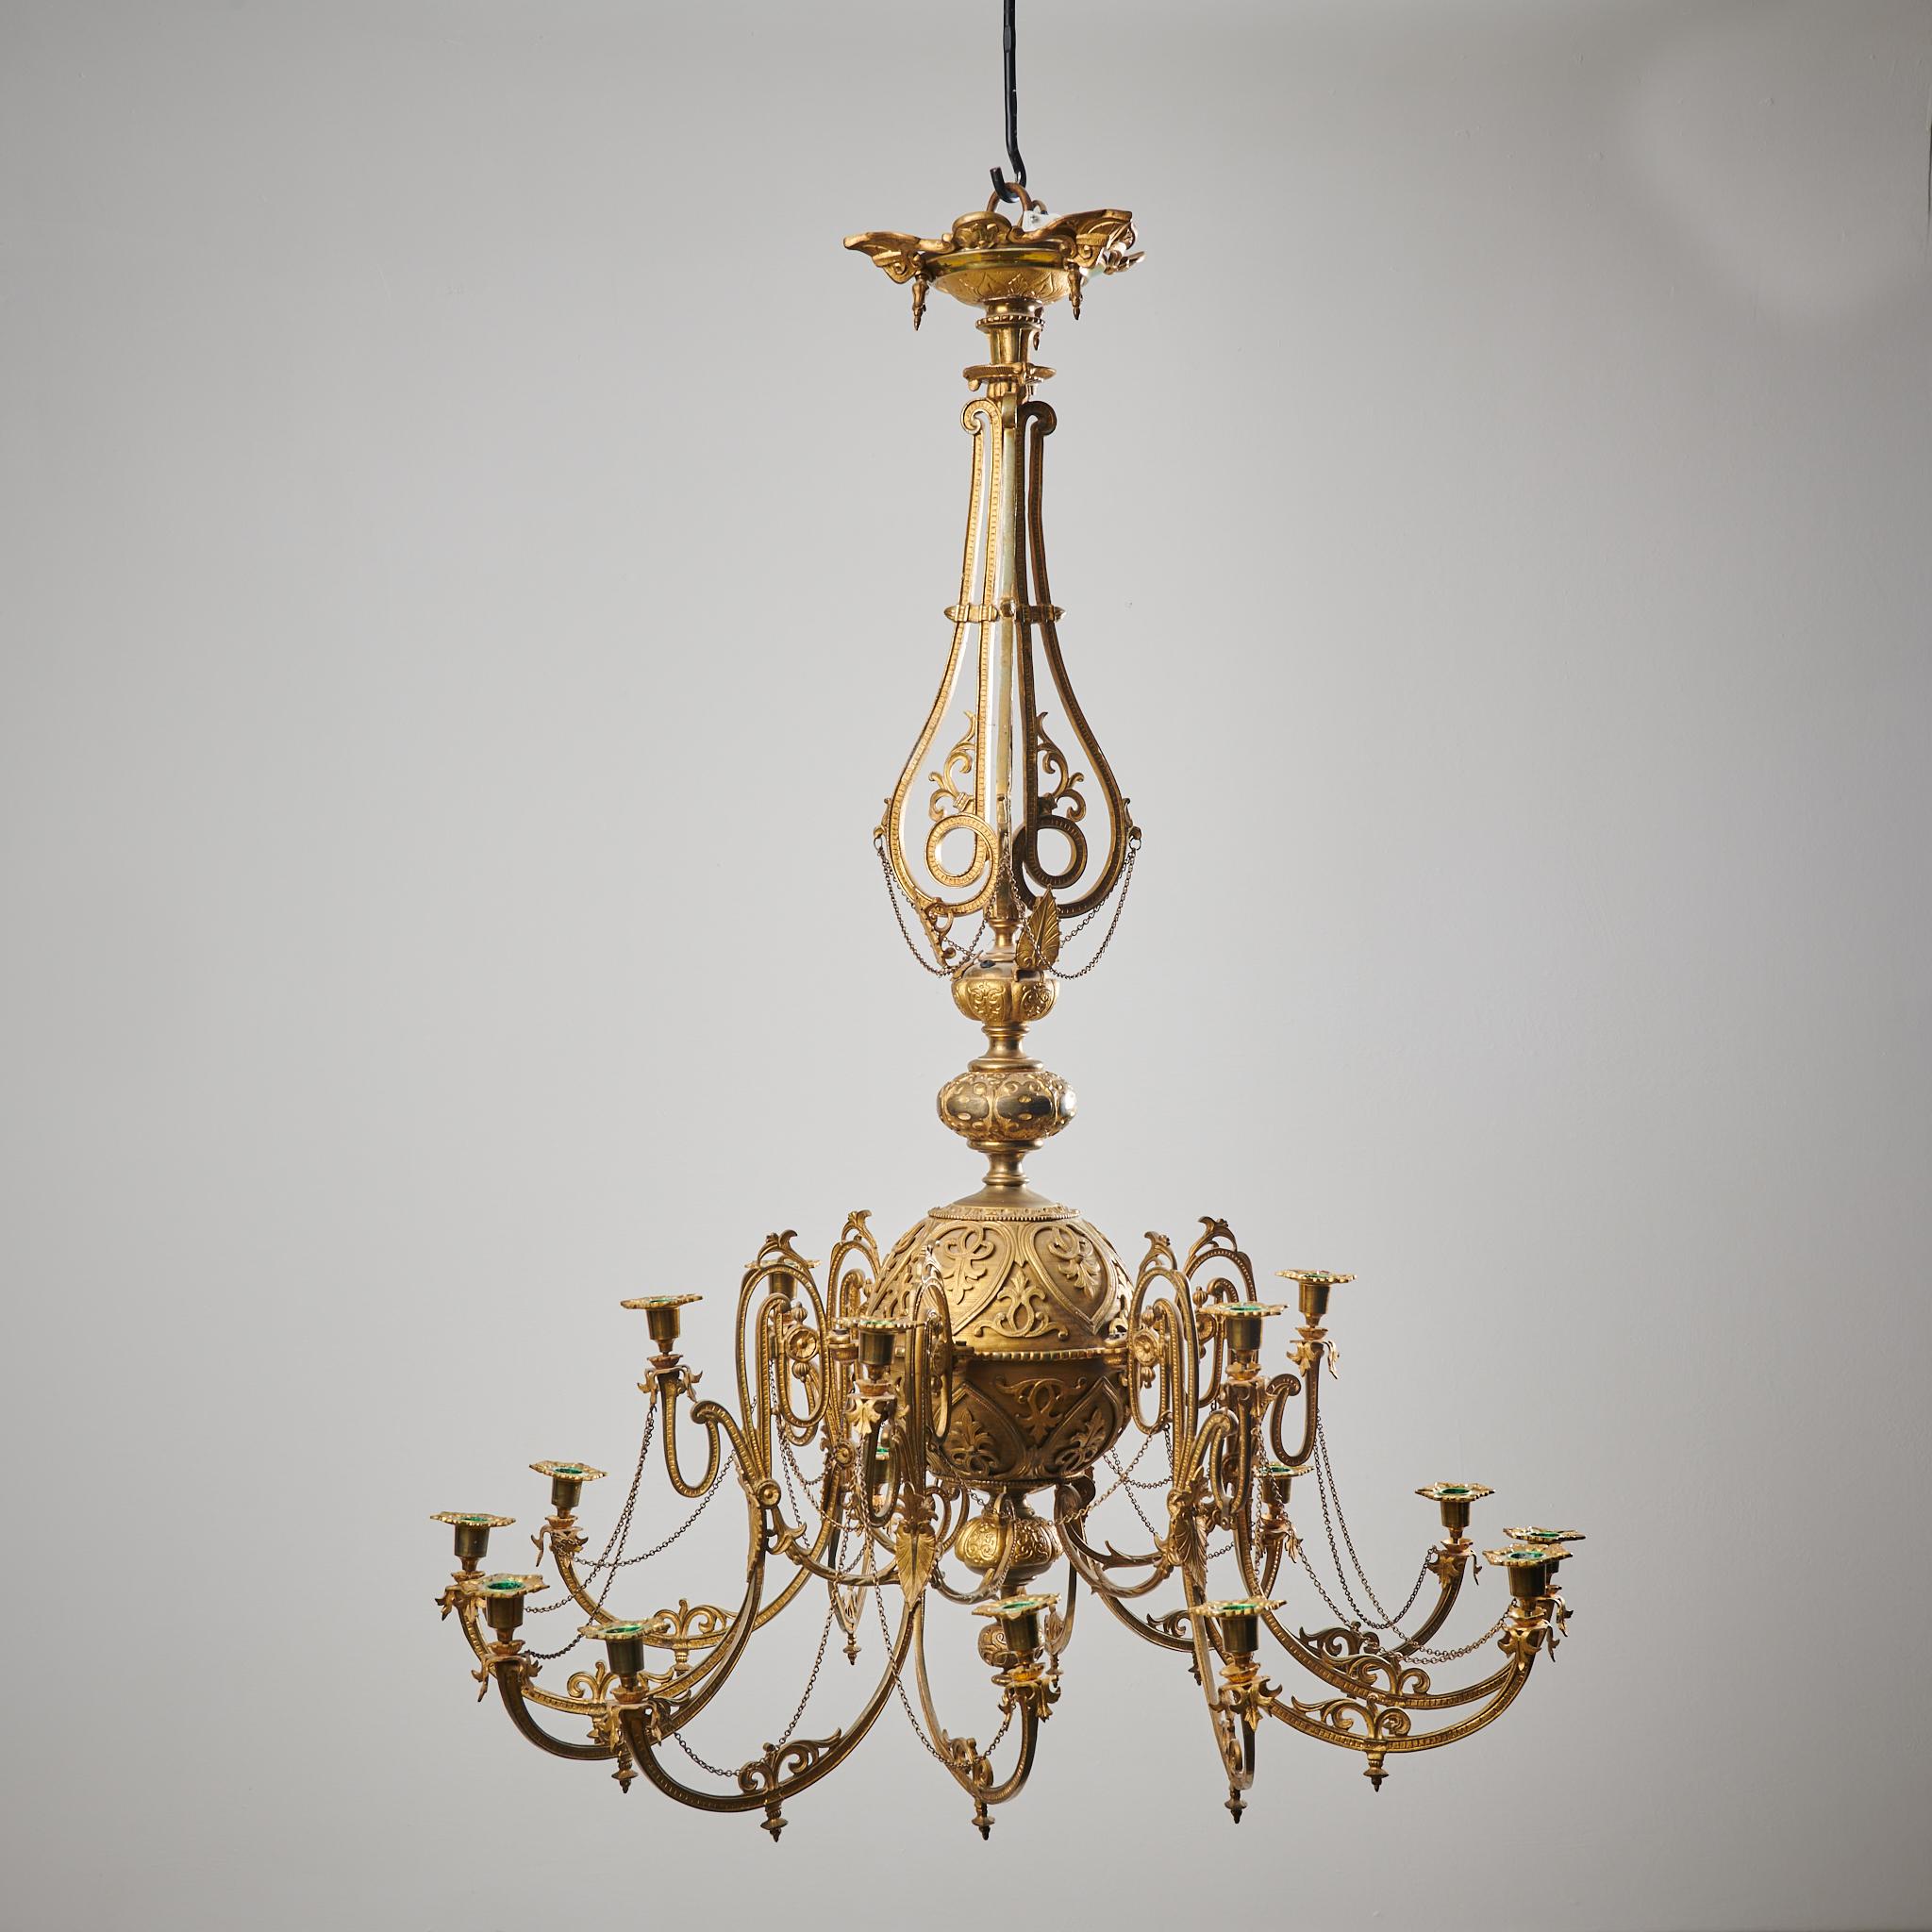 Lustre suédois antique en bronze fabriqué au milieu des années 1800, entre 1850 et 1860. Le lustre est fabriqué en métal bronzé avec un cadre rond richement décoré. Il présente des bras incurvés et un décor complexe sous forme de chaînes, de